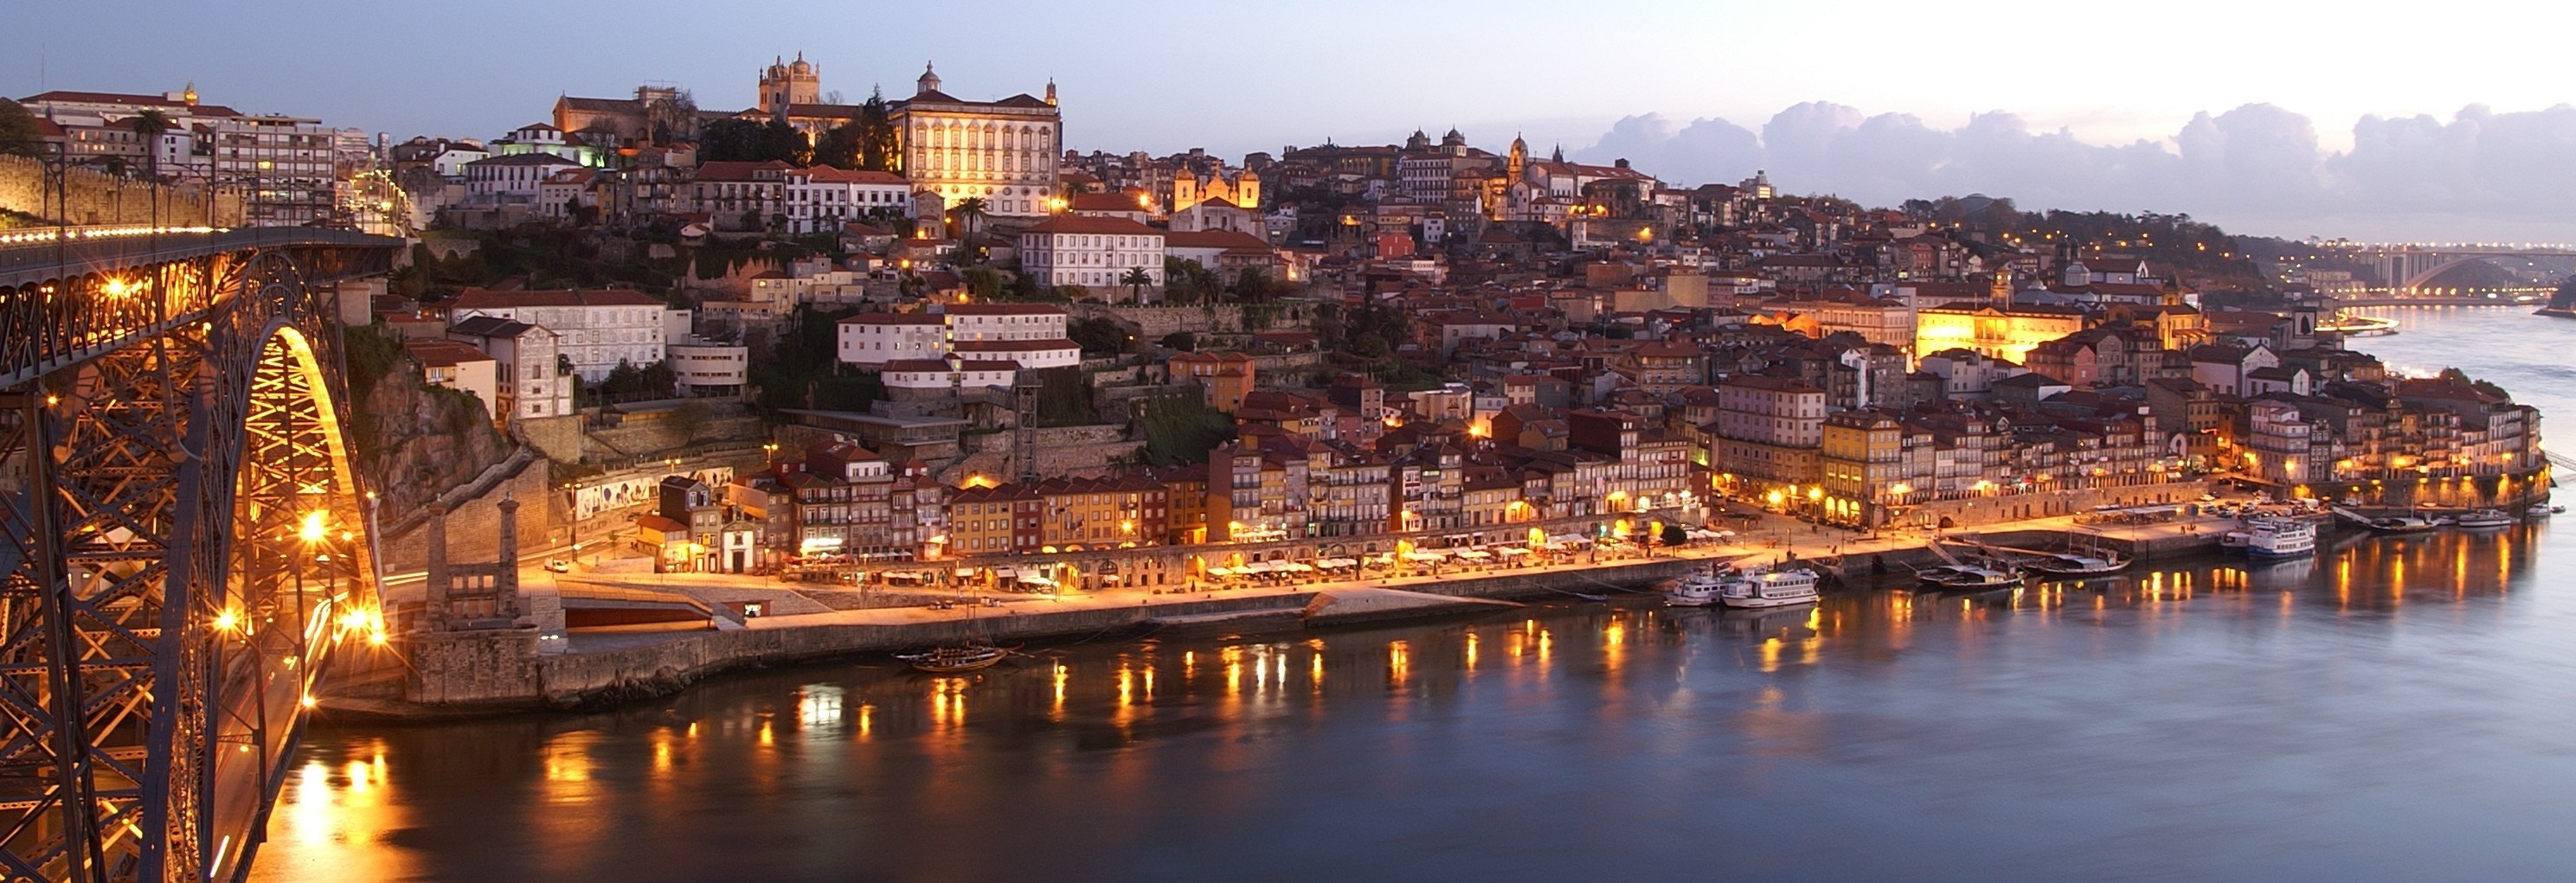 Porto, Invicta, Night, Lights, Ribeira, Landscape Wallpaper